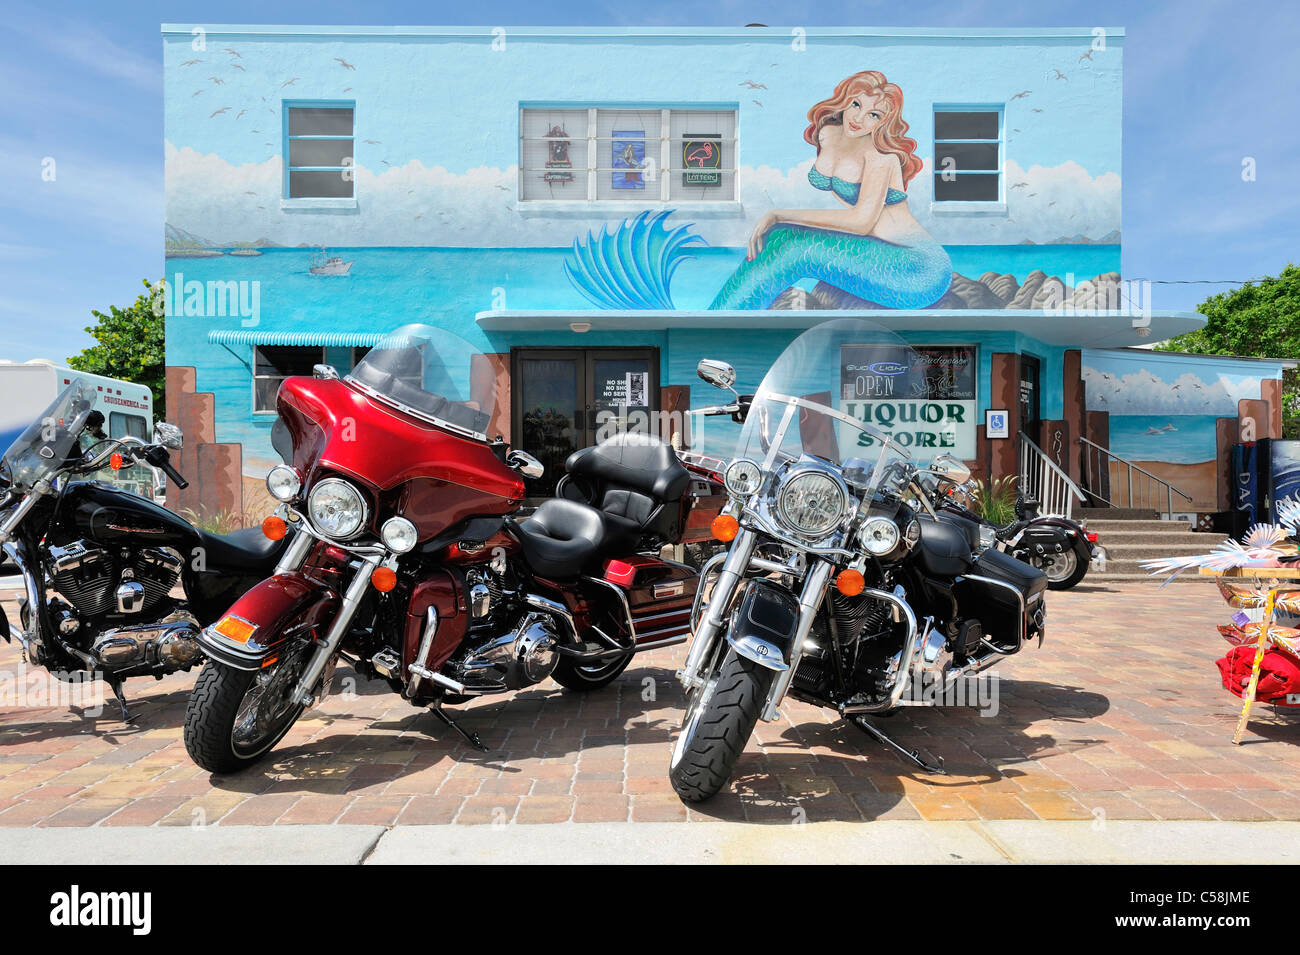 Motos, magasin d'alcool, sirène, murale, Fort Myers Beach, Florida, USA, United States, Amérique, prêt de vélos Banque D'Images